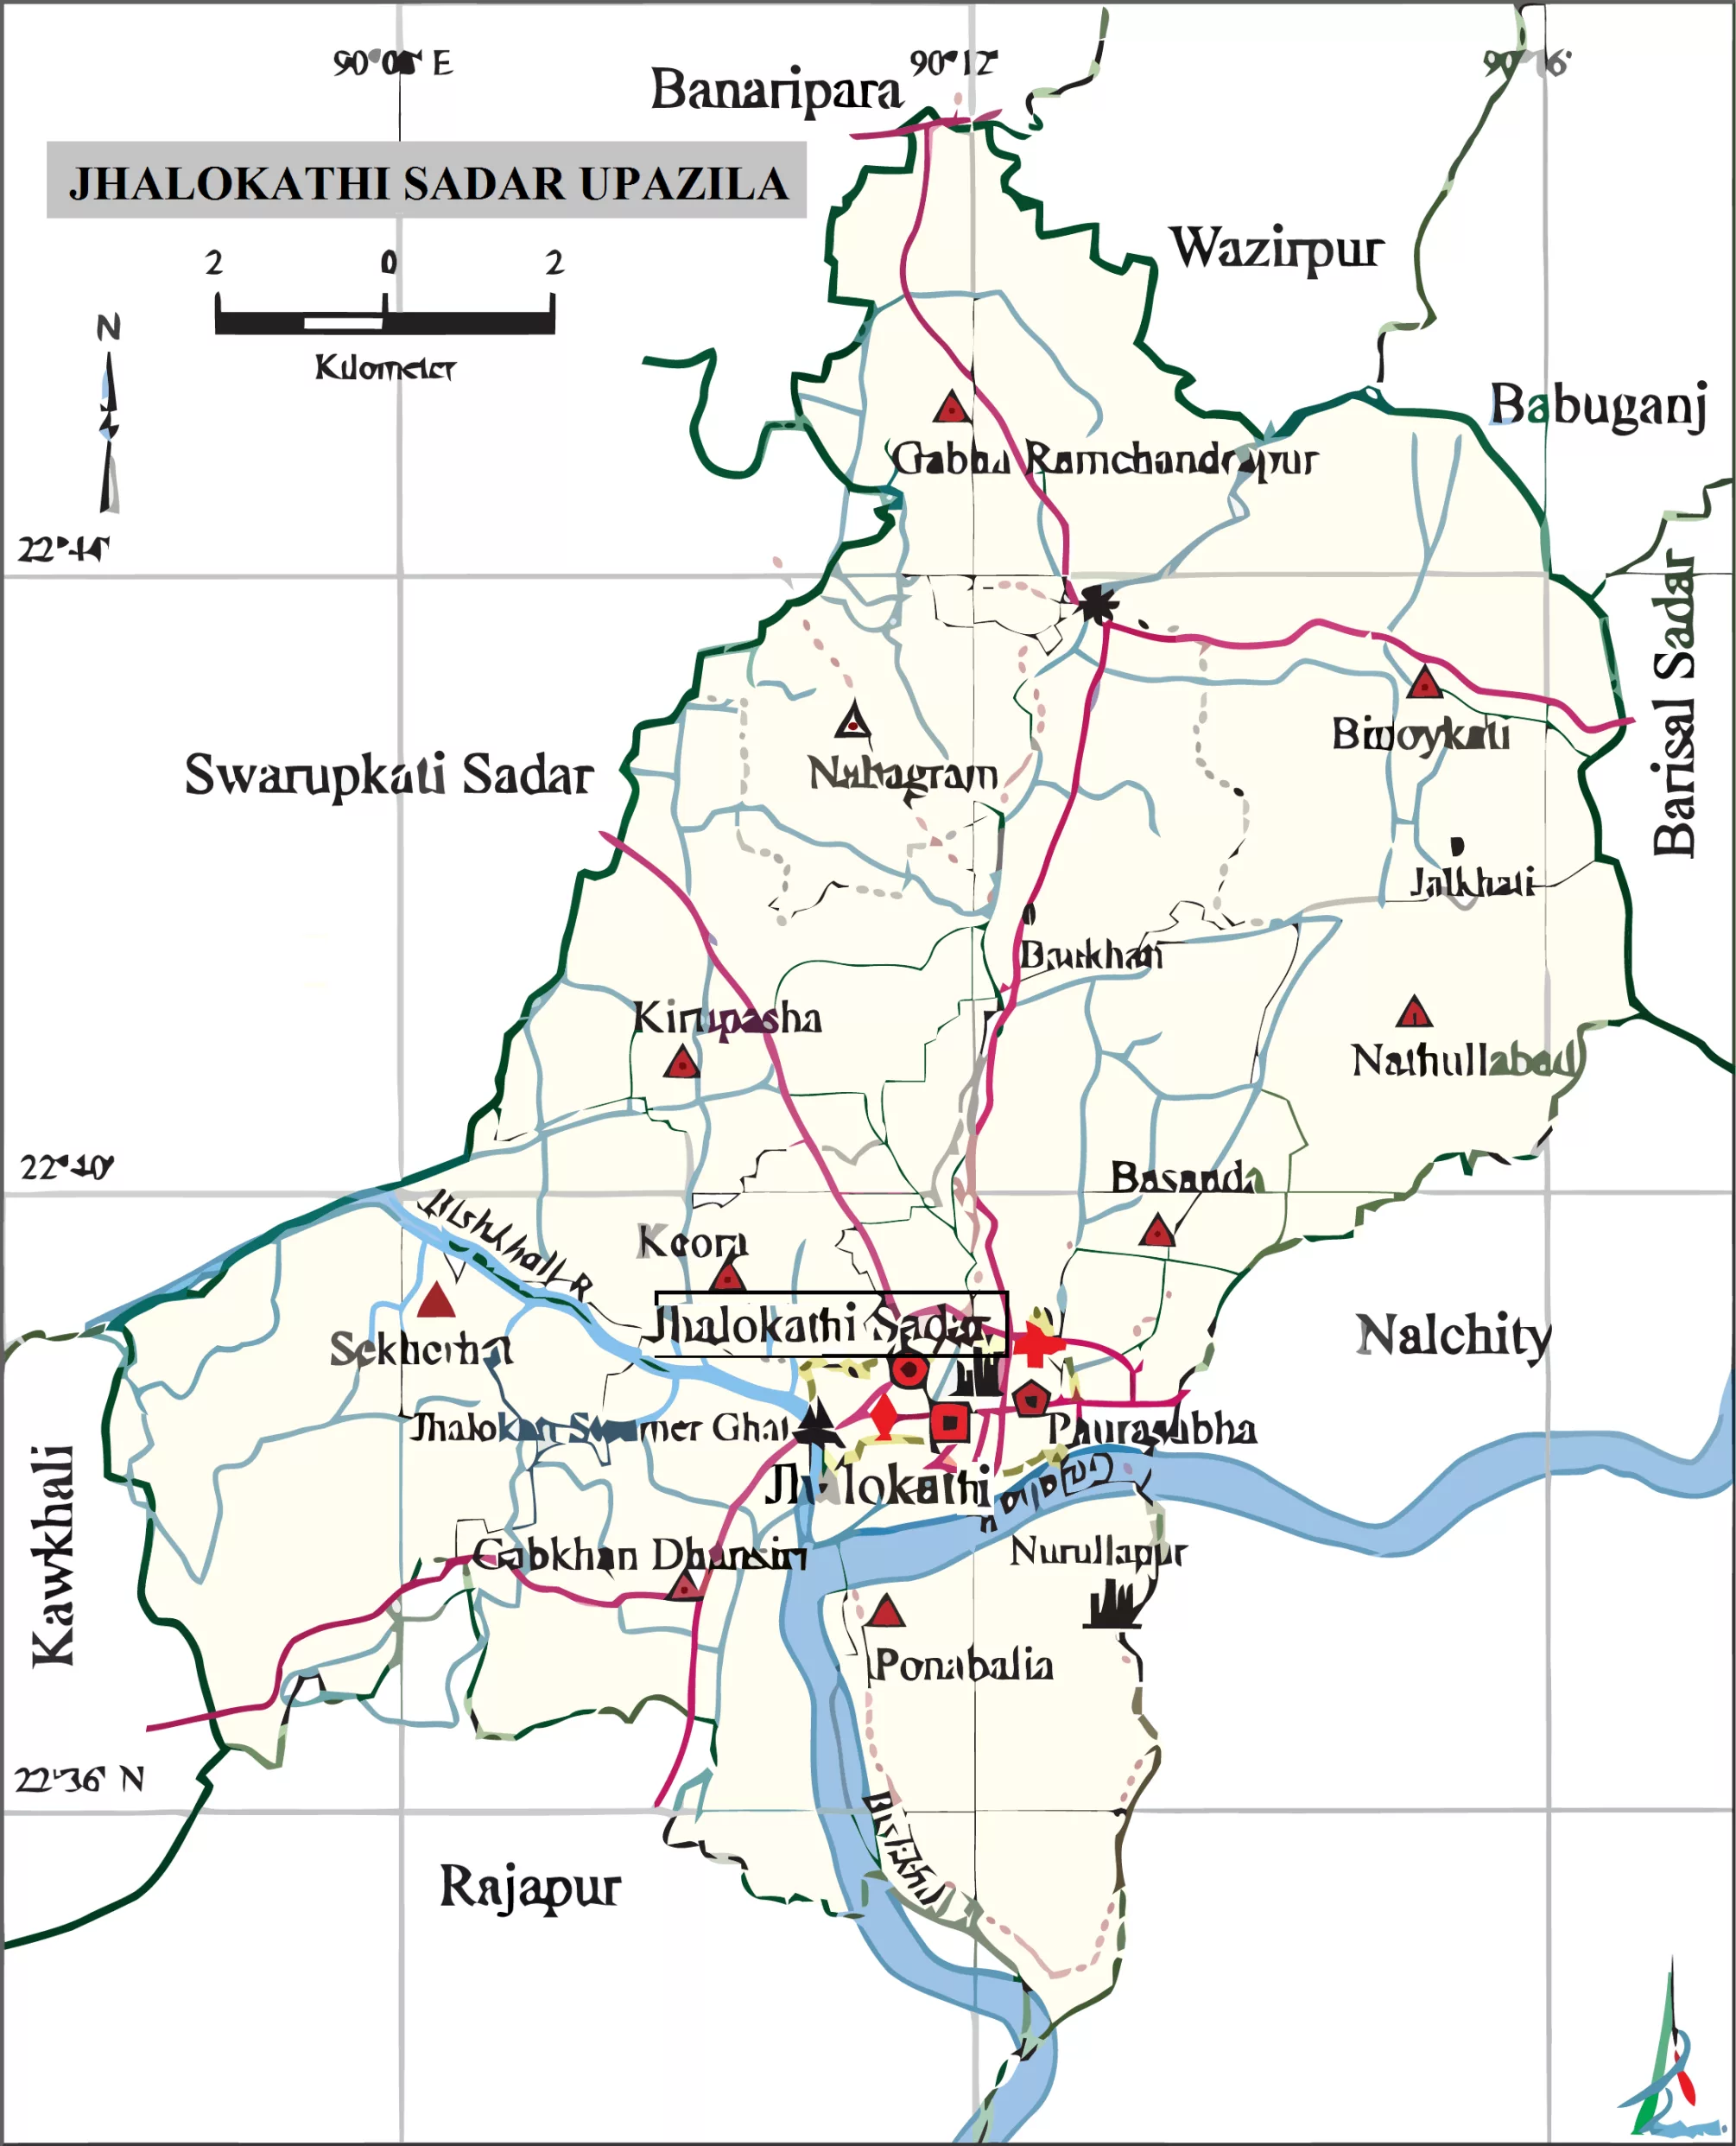 Study area map (Jhalokathi Sadar Upazila)